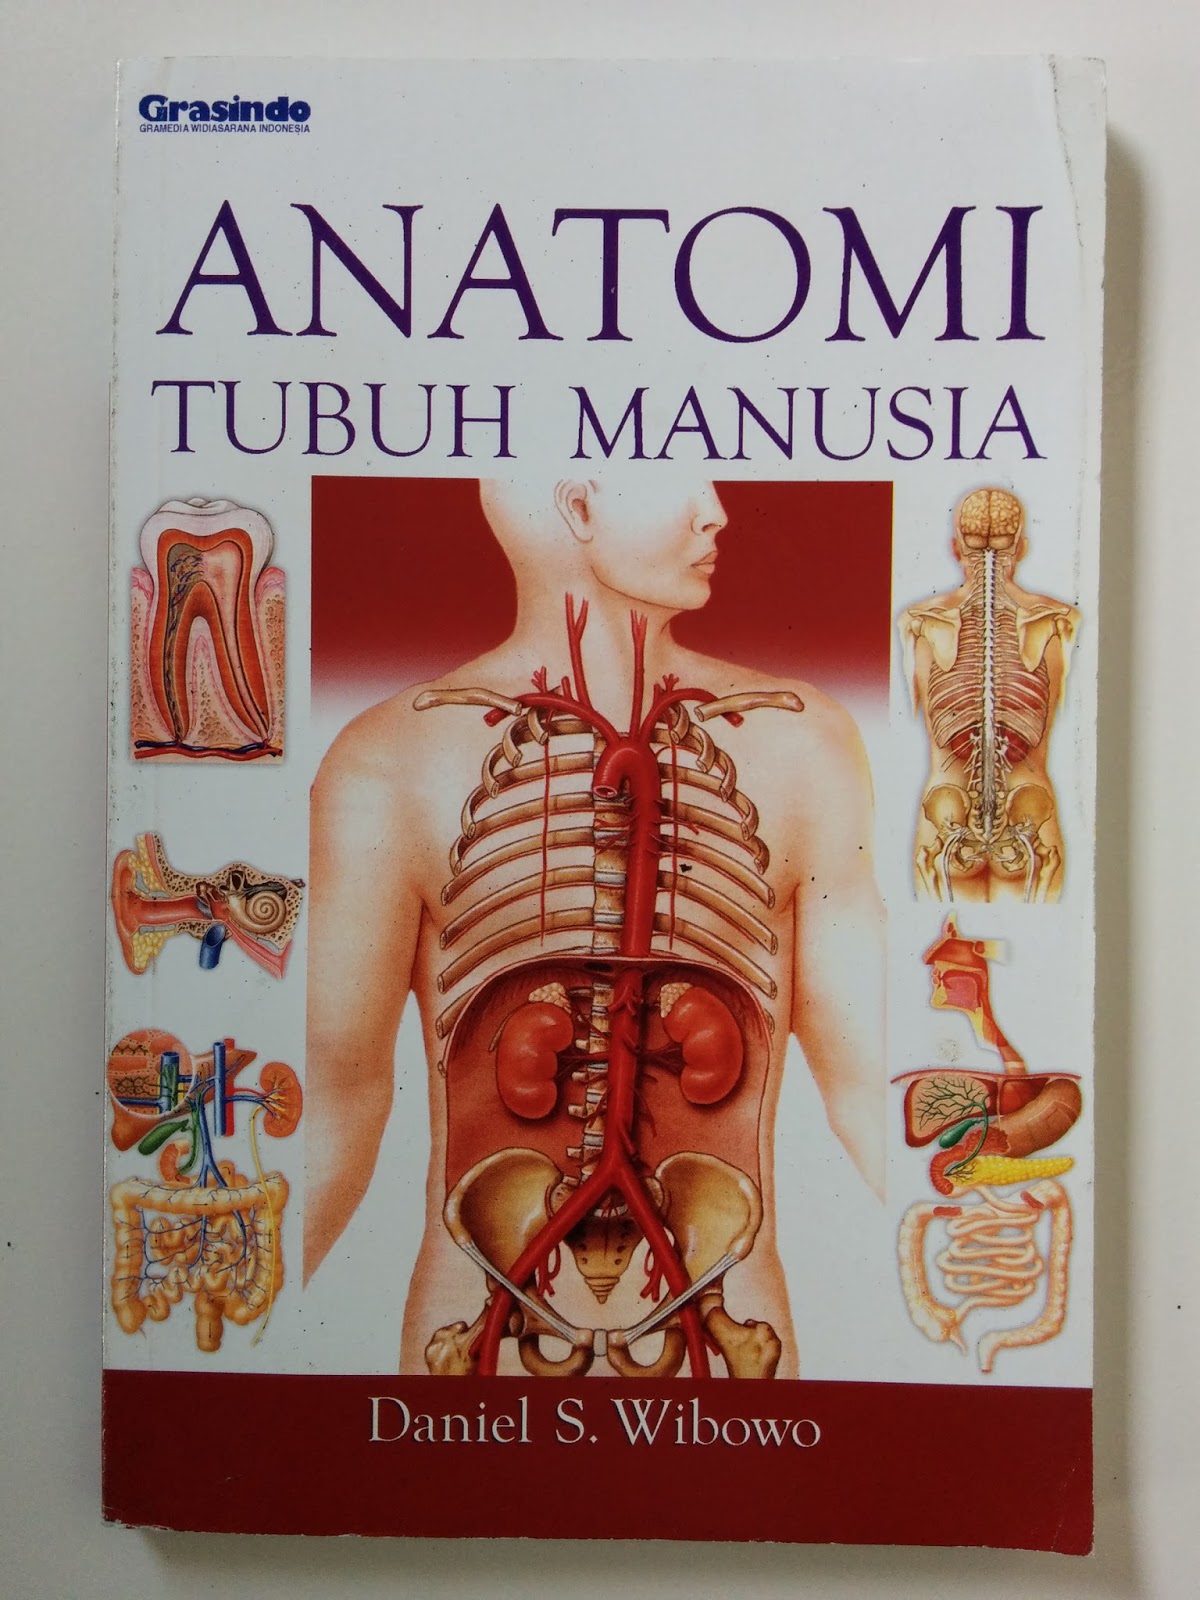 Jual Buku: Anatomi Tubuh Manusia | Toko Buku Bekas Online